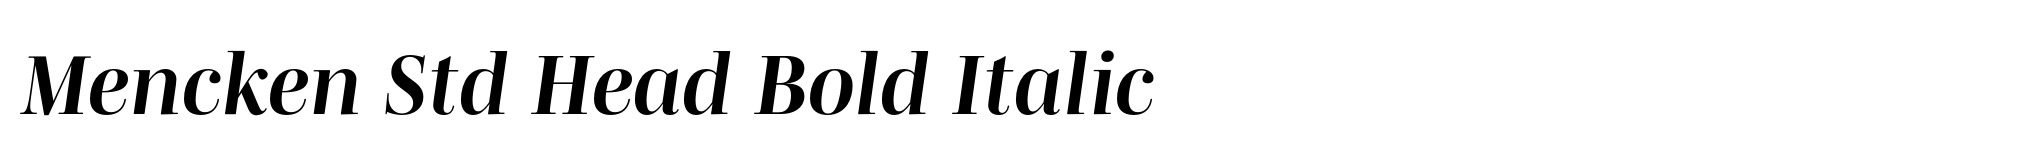 Mencken Std Head Bold Italic image